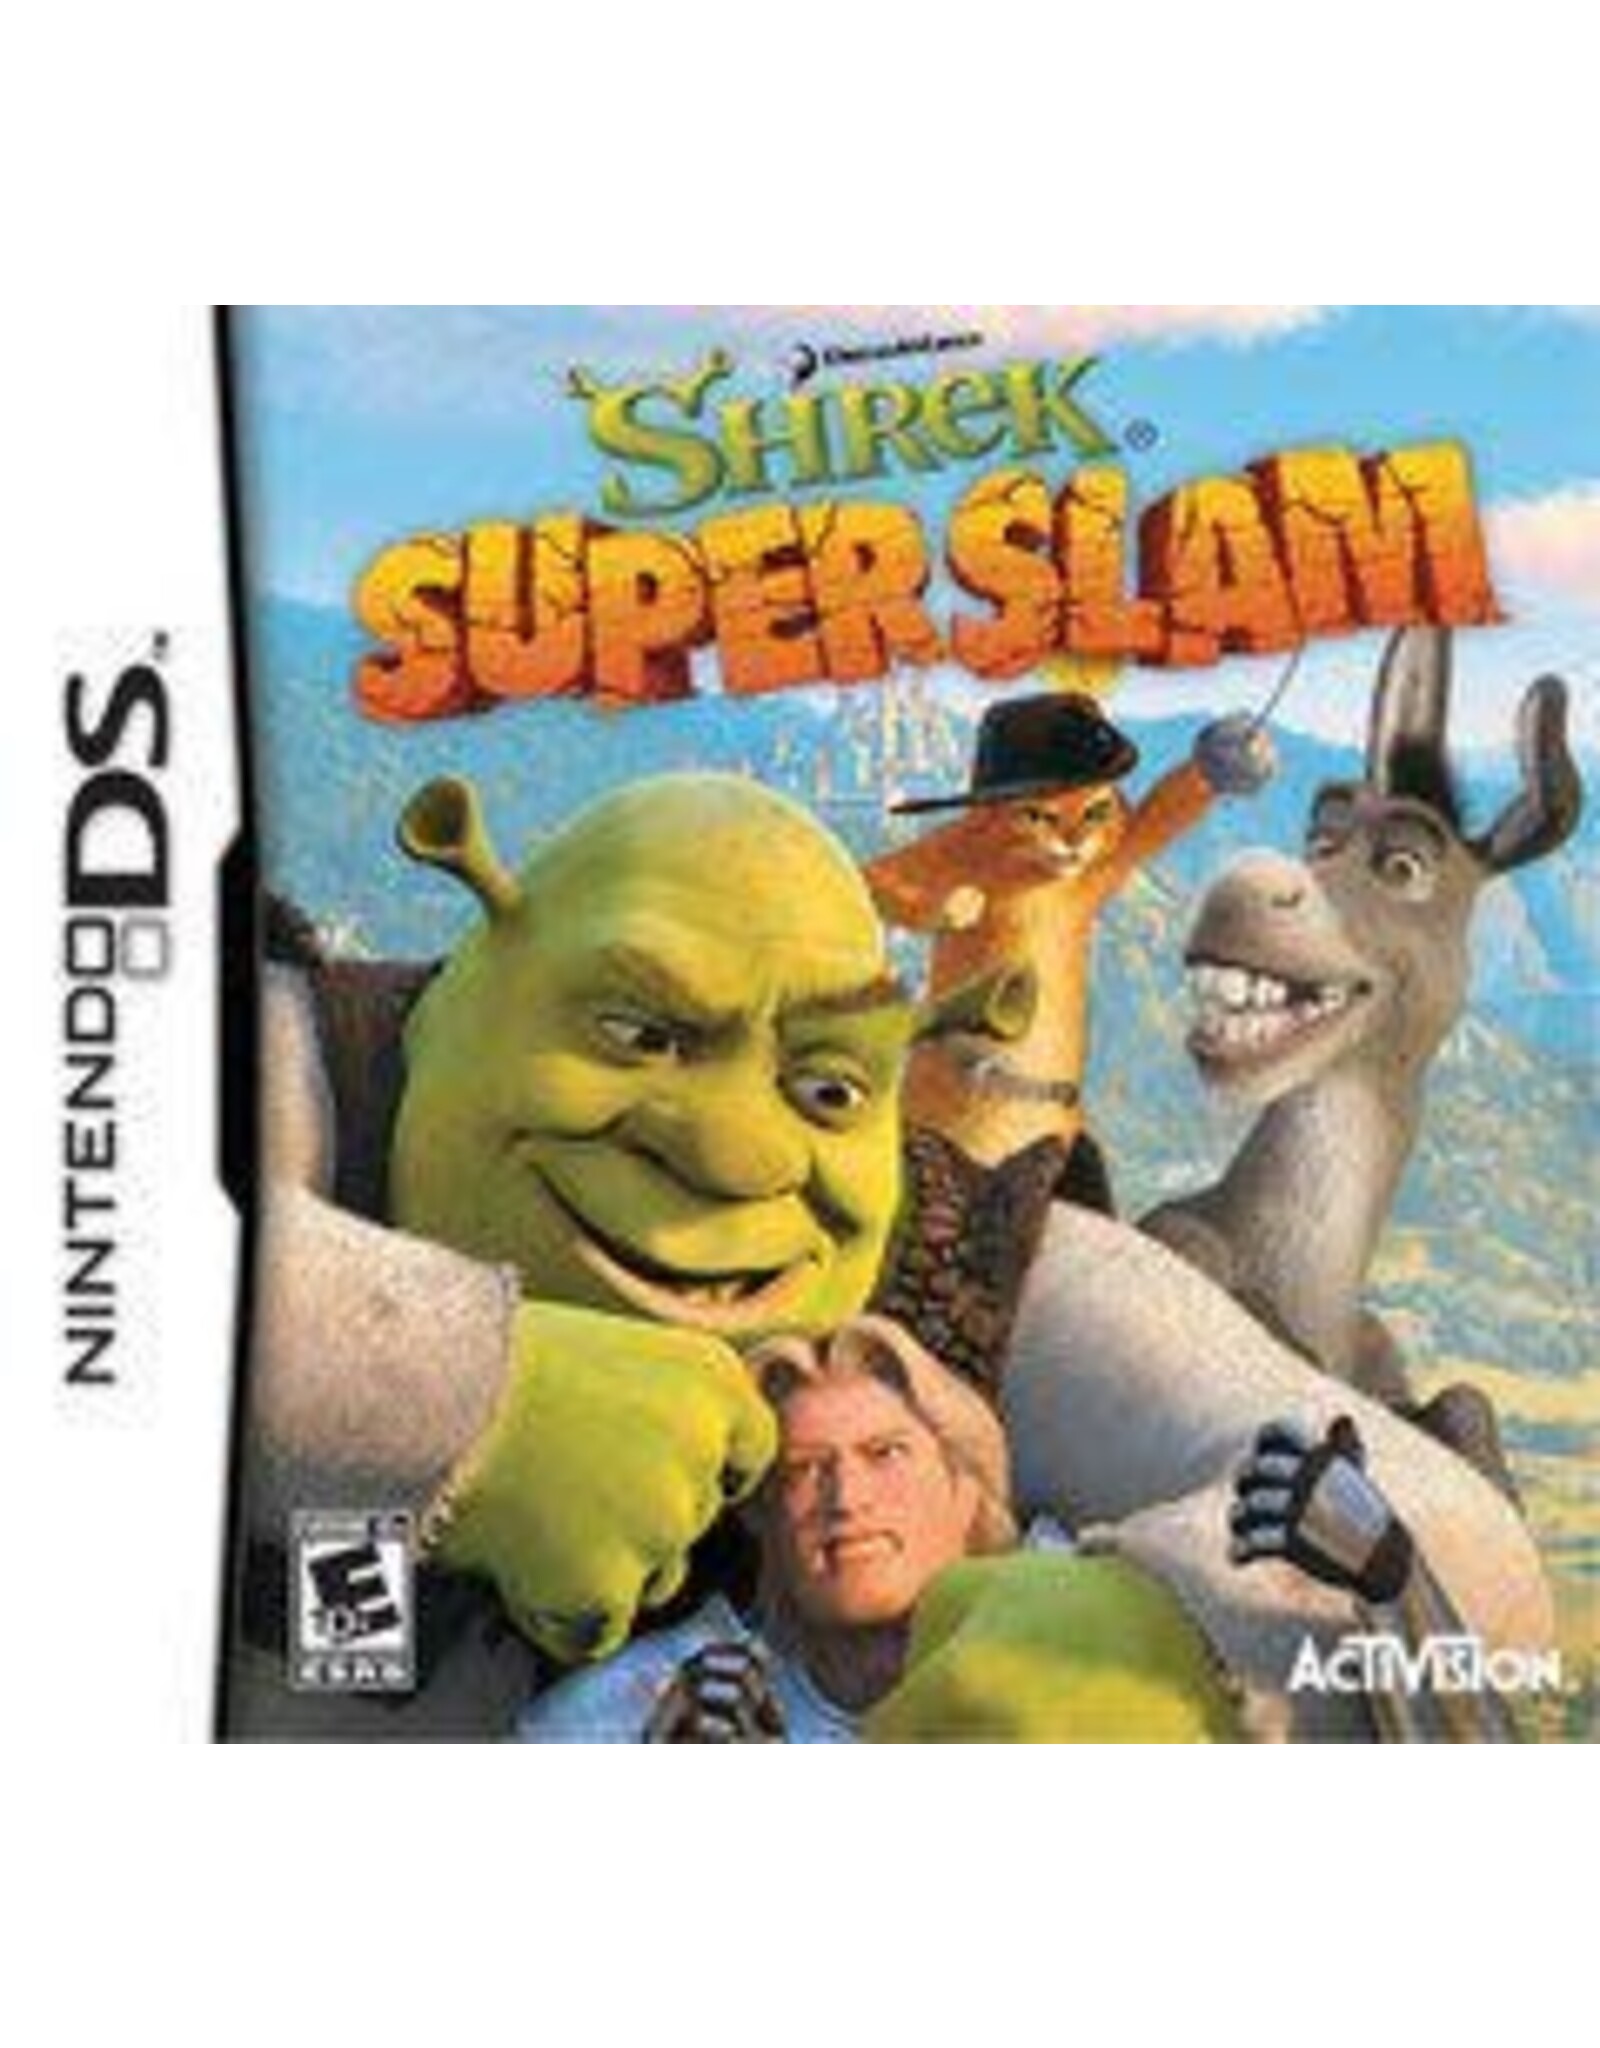 Nintendo DS Shrek Superslam (Cart Only)